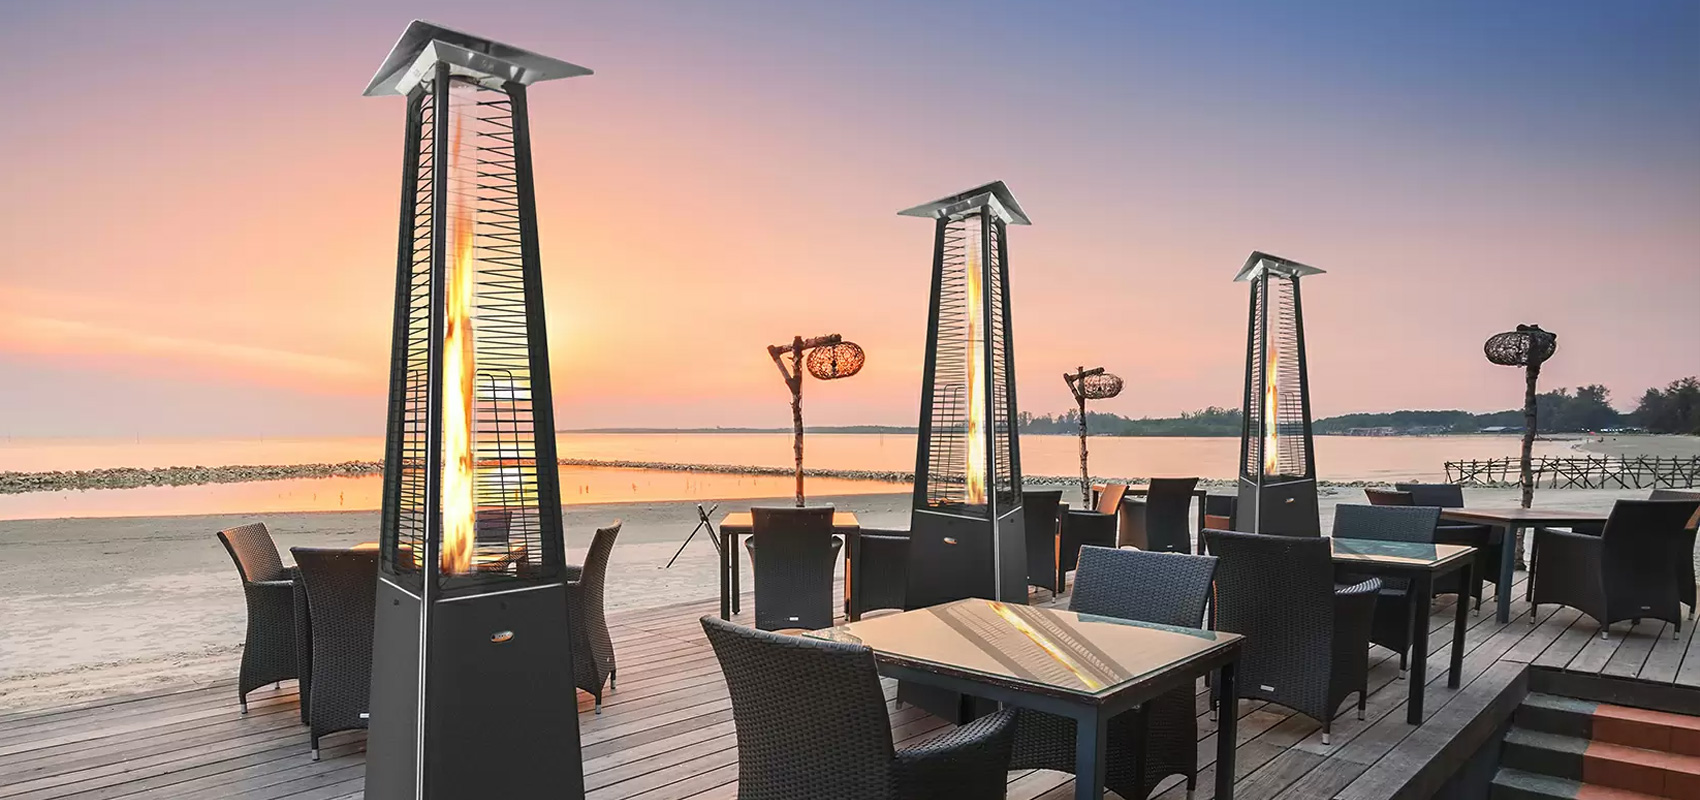 Terrasse d'une plage avec plusieurs lampes de chauffage près des tables